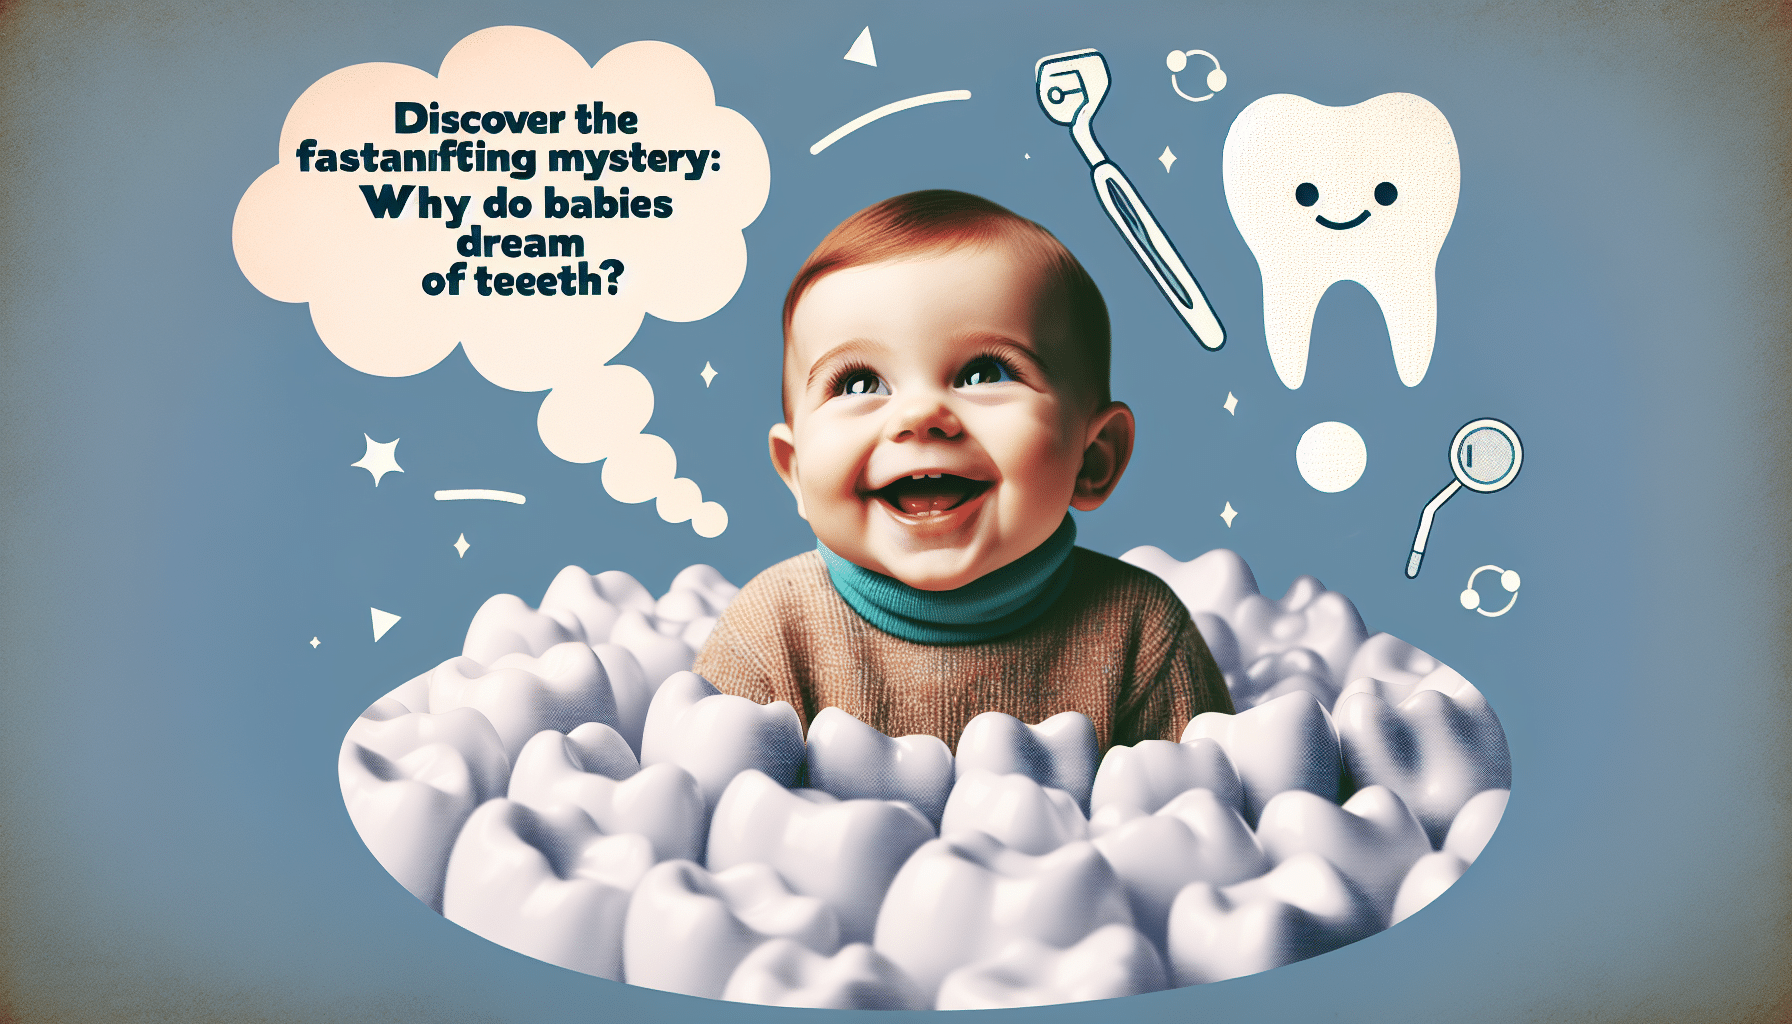 découvrez pourquoi les bébés rêvent-ils de dents et explorez le monde des rêves infantiles dans cet article fascinant.